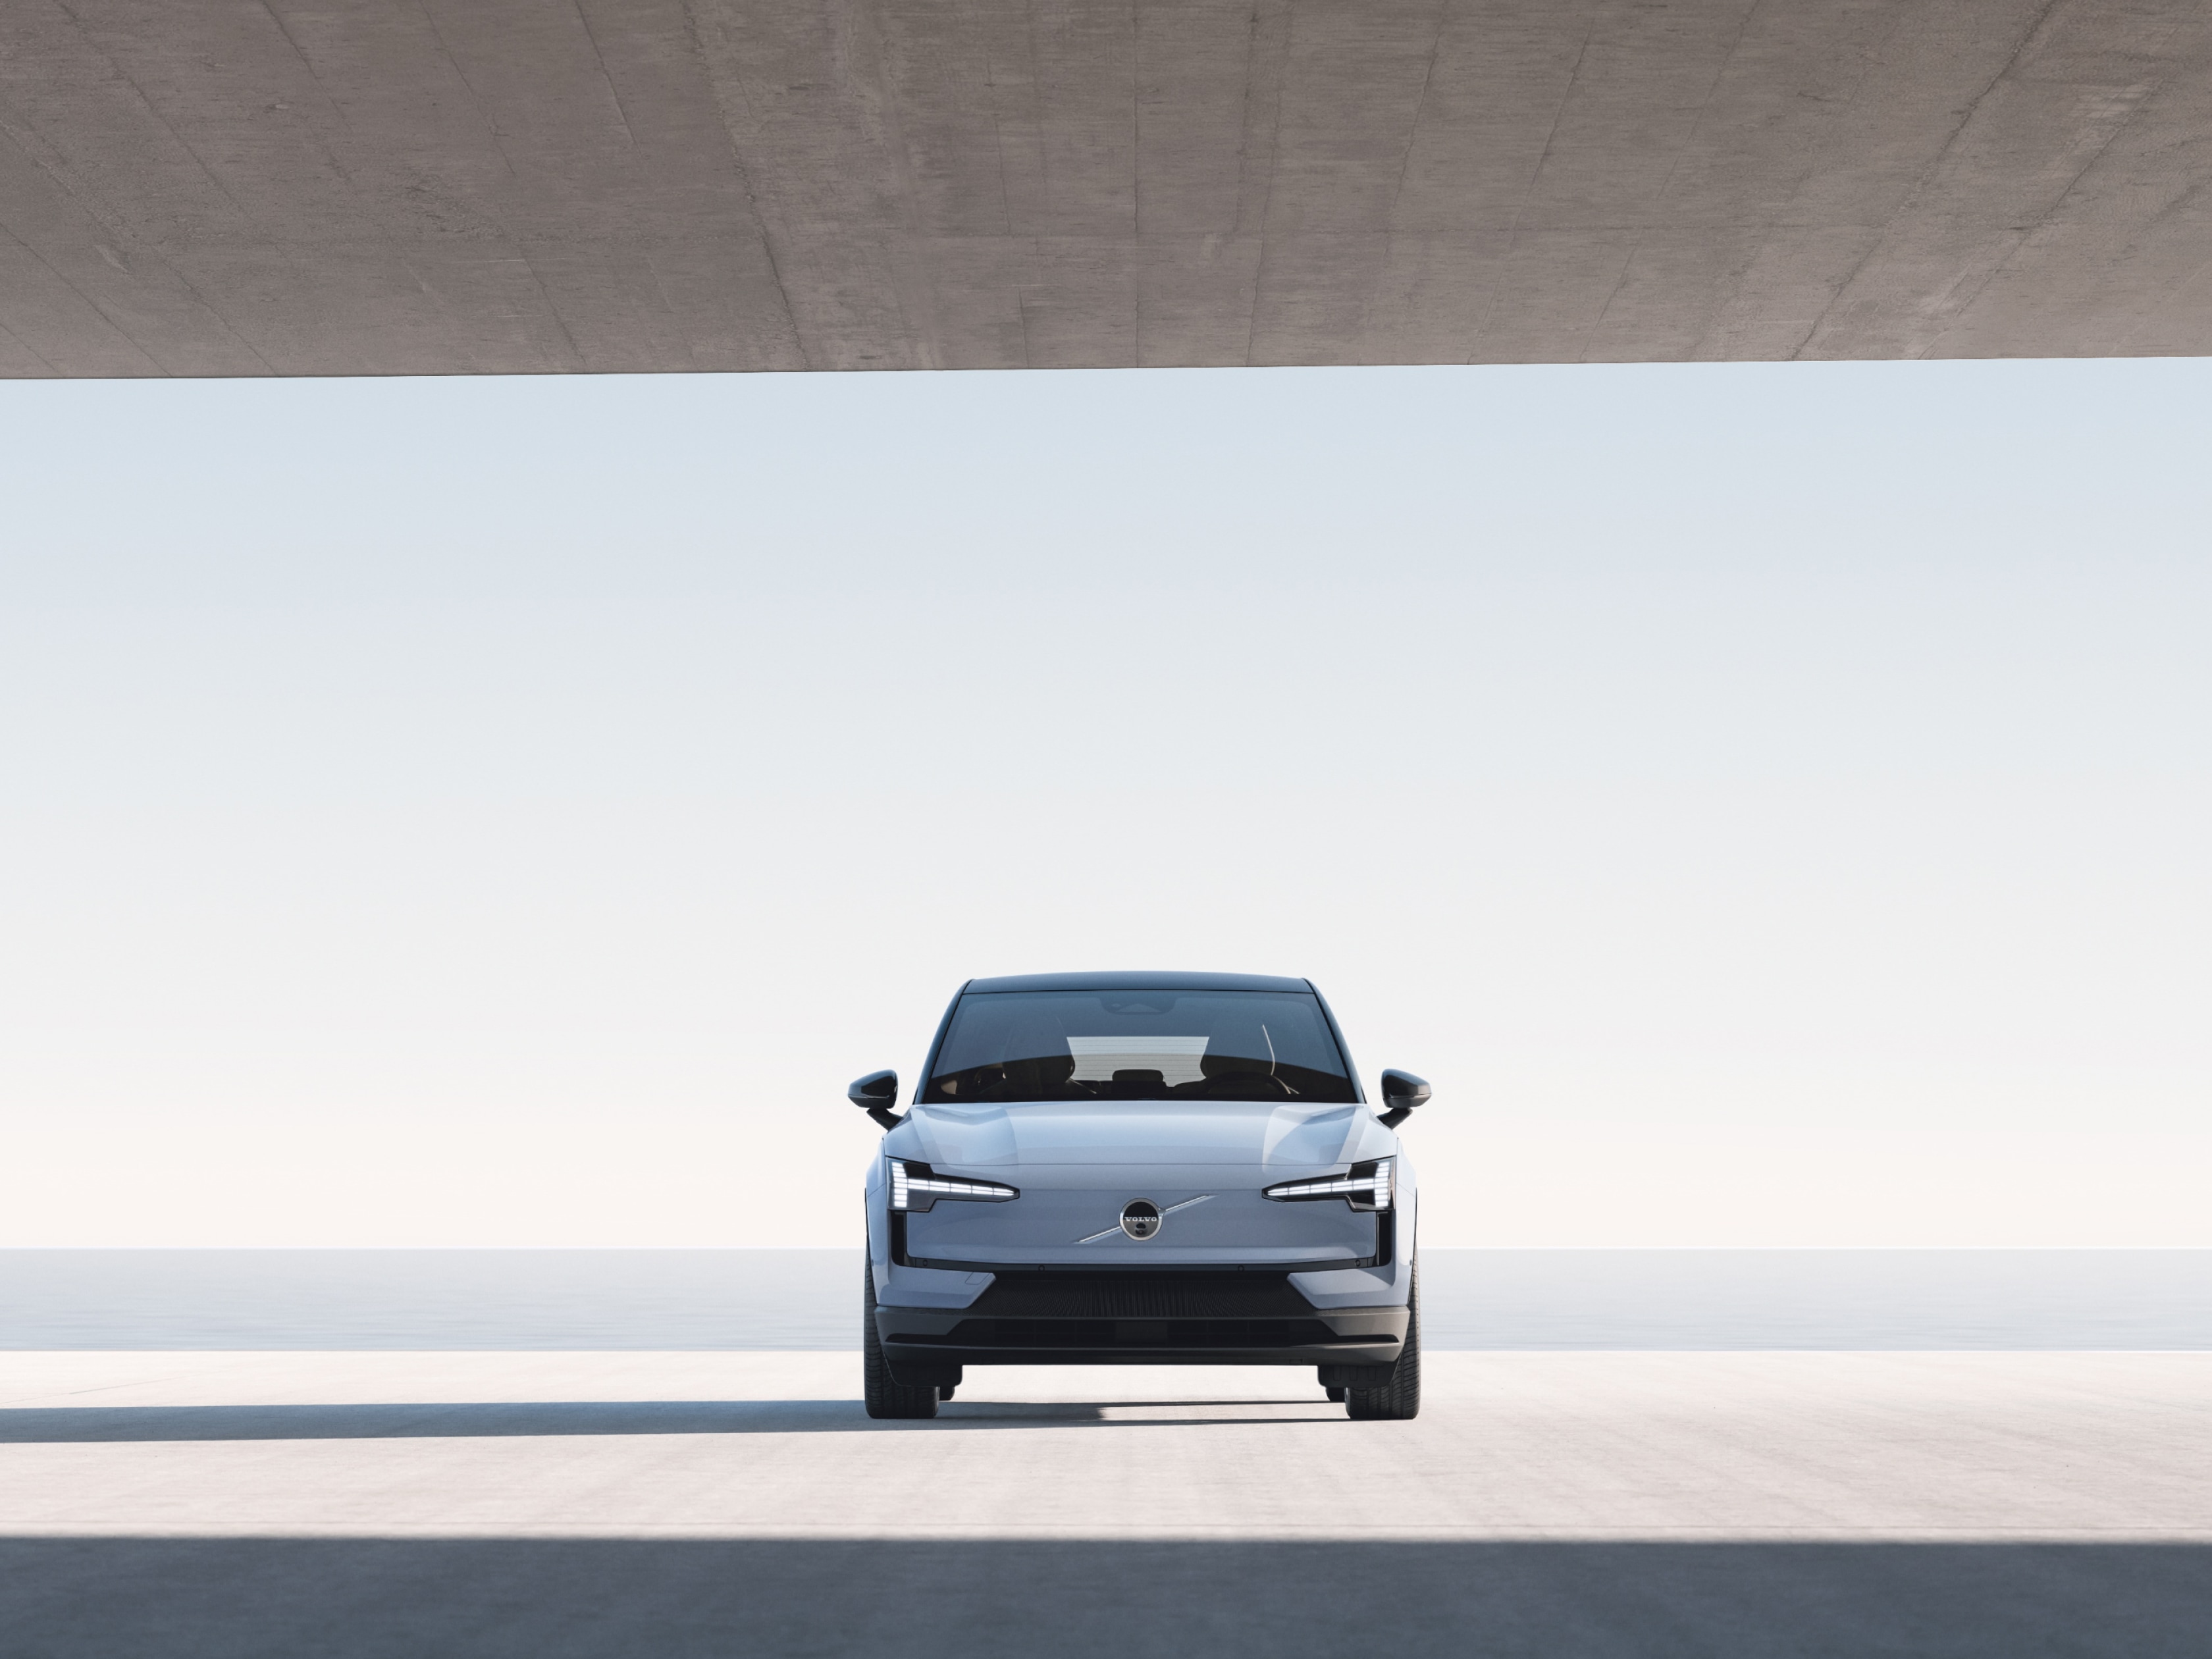 Groothoekbeeld van een Volvo EX30 van voren gezien, geparkeerd in een grote betonnen structuur met uitzicht op water.